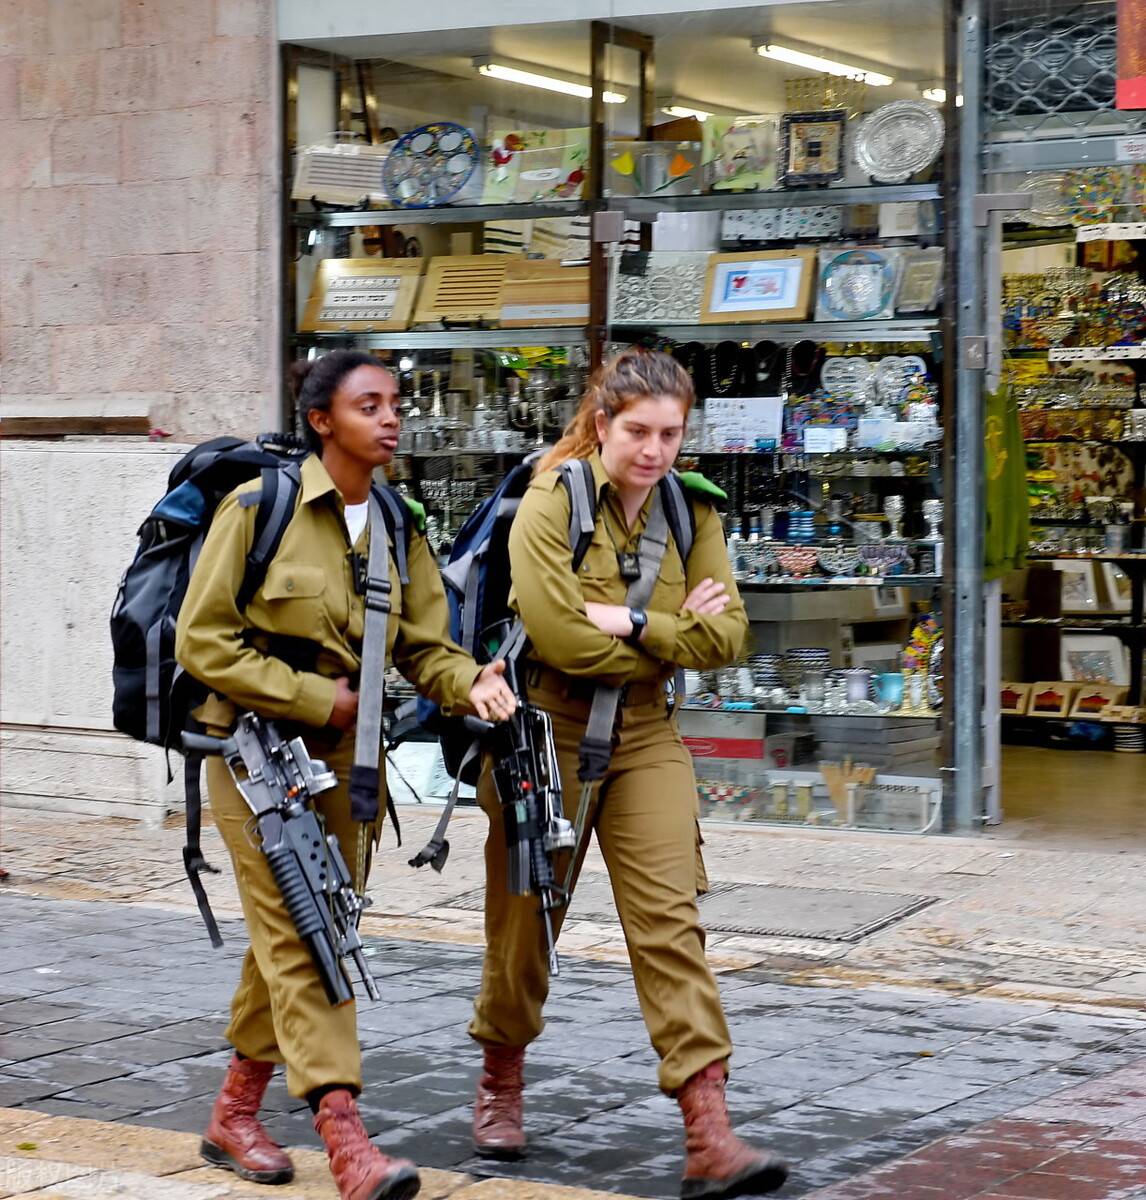 以色列的女兵闻名世界,那么除此之外以色列到底有多厉害呢?